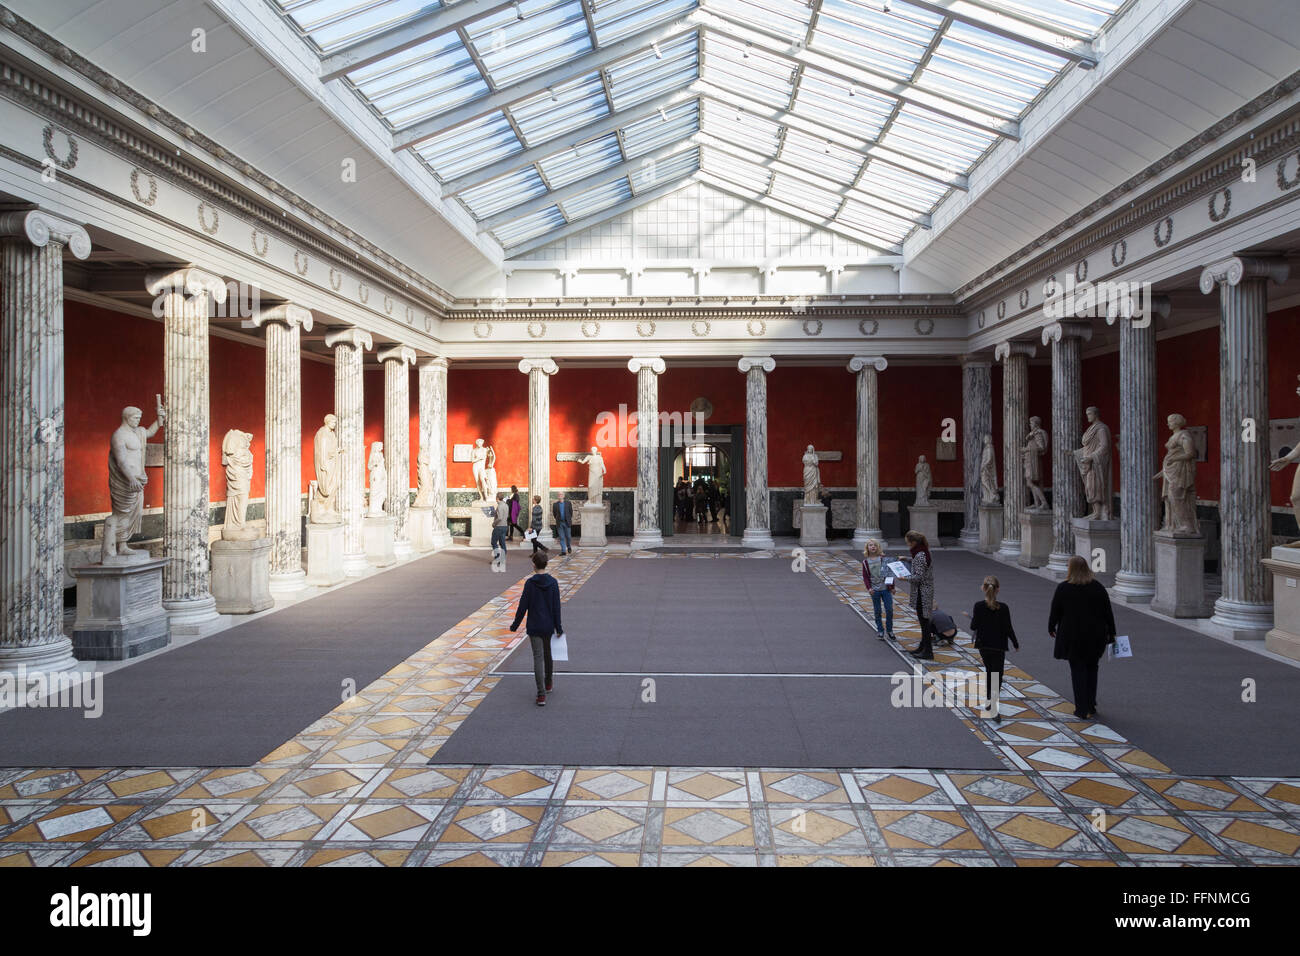 Copenhague, Danemark - 16 Février 2016 : Des sculptures grecques et romaines dans le New Carlsberg Glyptotek. Banque D'Images